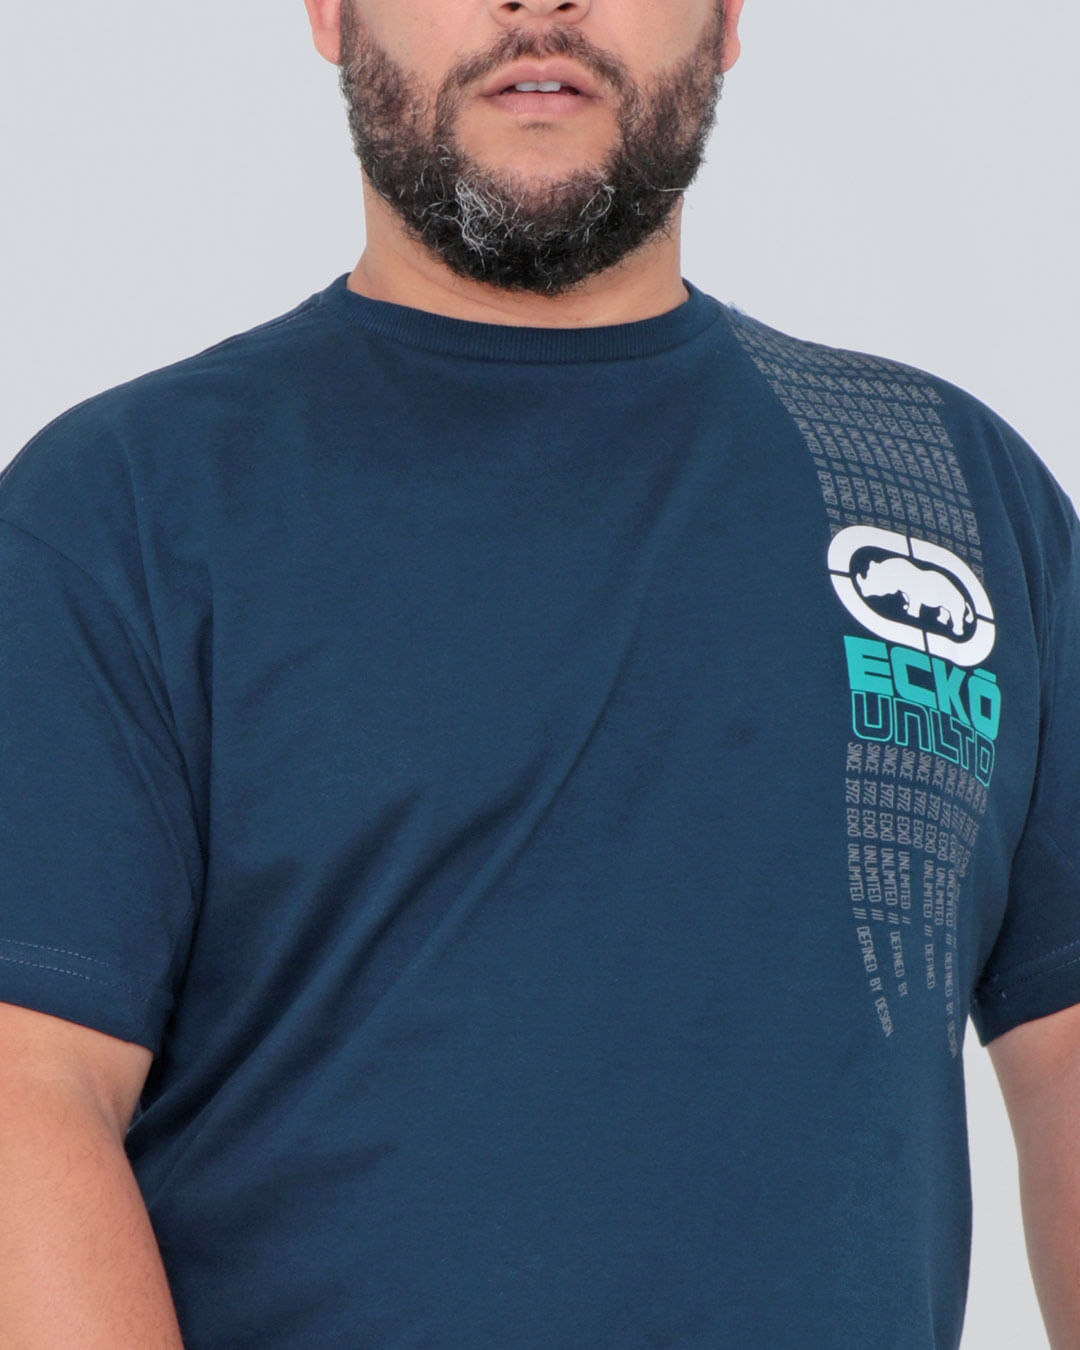 Camiseta-Plus-Size-Manga-Curta-Ecko-Azul-Marinho